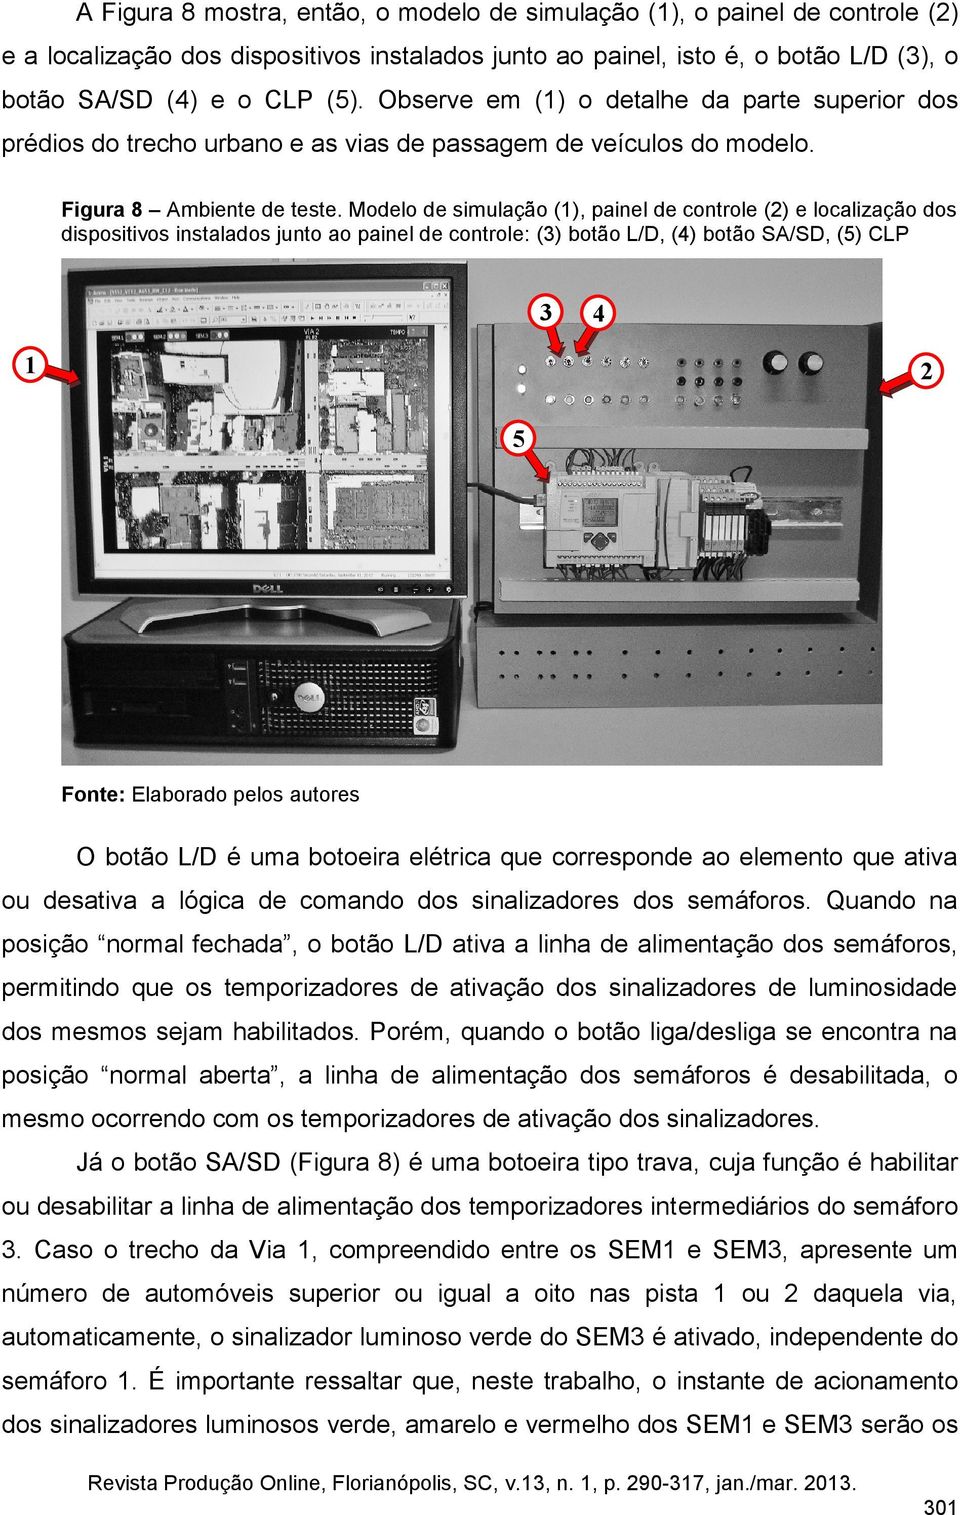 Modelo de simulação (1), painel de controle (2) e localização dos dispositivos instalados junto ao painel de controle: (3) botão L/D, (4) botão SA/SD, (5) CLP 3 4 1 2 5 O botão L/D é uma botoeira